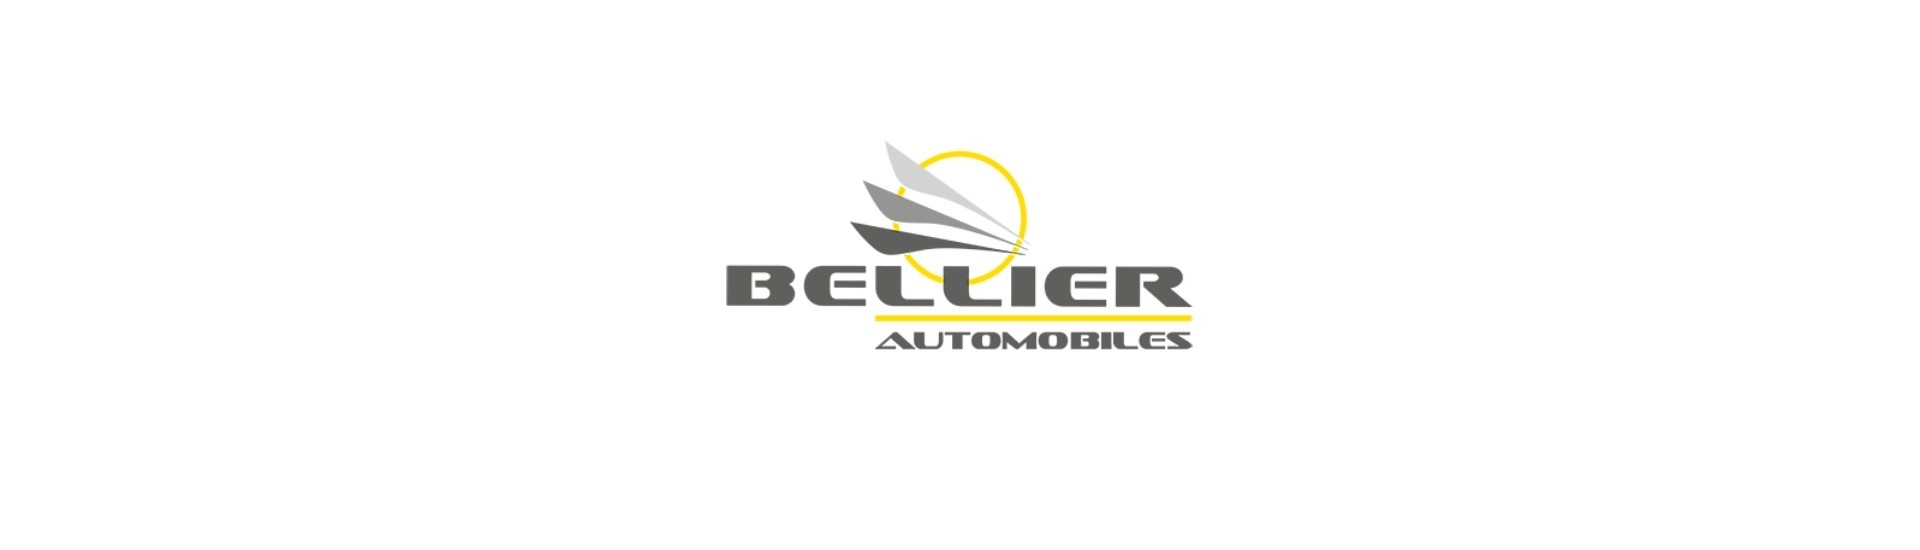 Ice Wiper moottori parhaan hinnan auto ilman lisenssiä Bellier